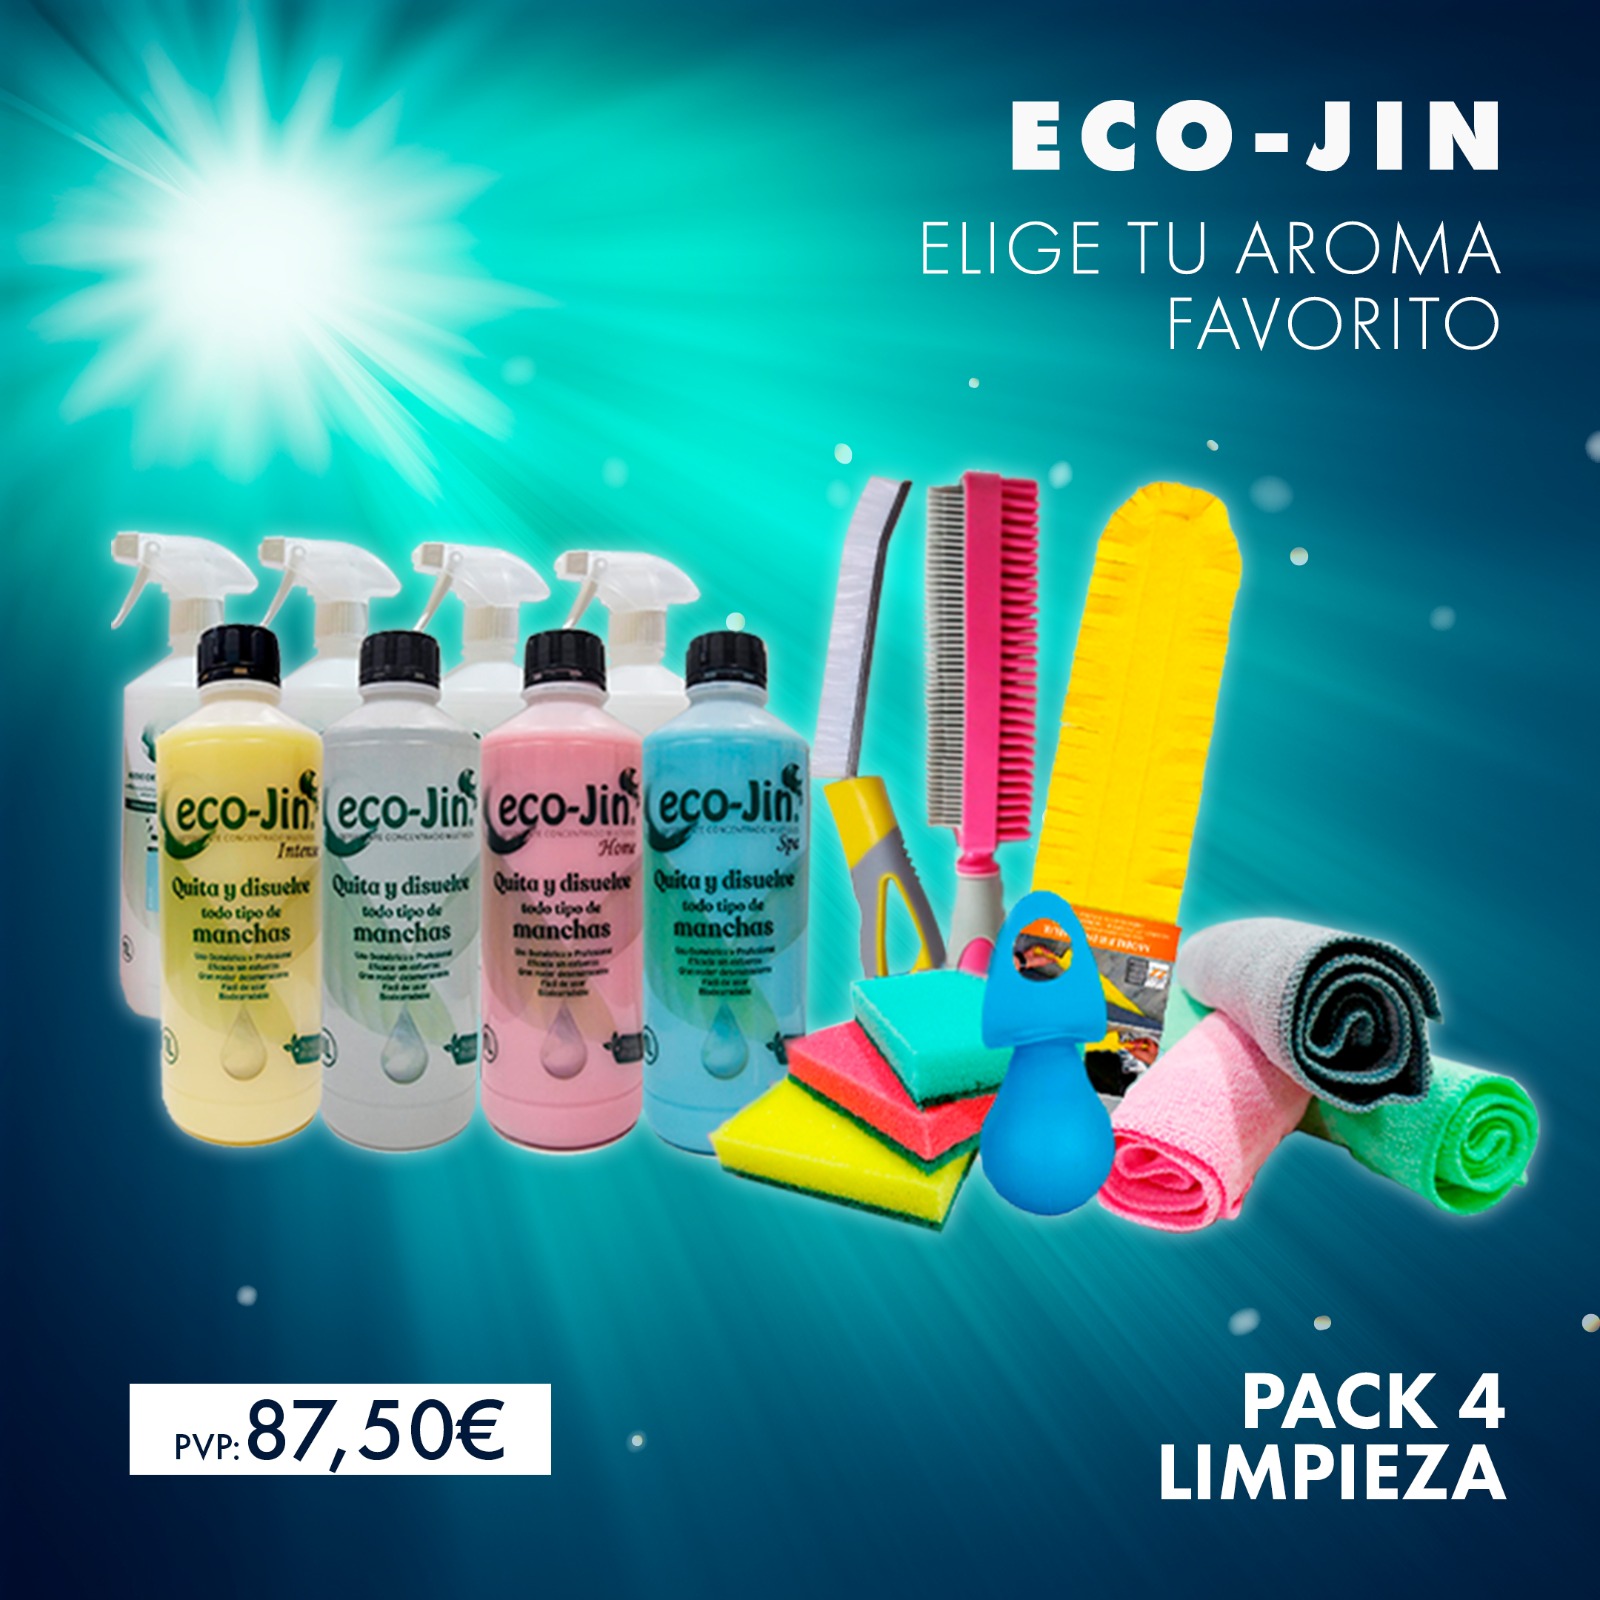 Pack 2 Limpieza Eco-Jin - Comprar online al mejor precio